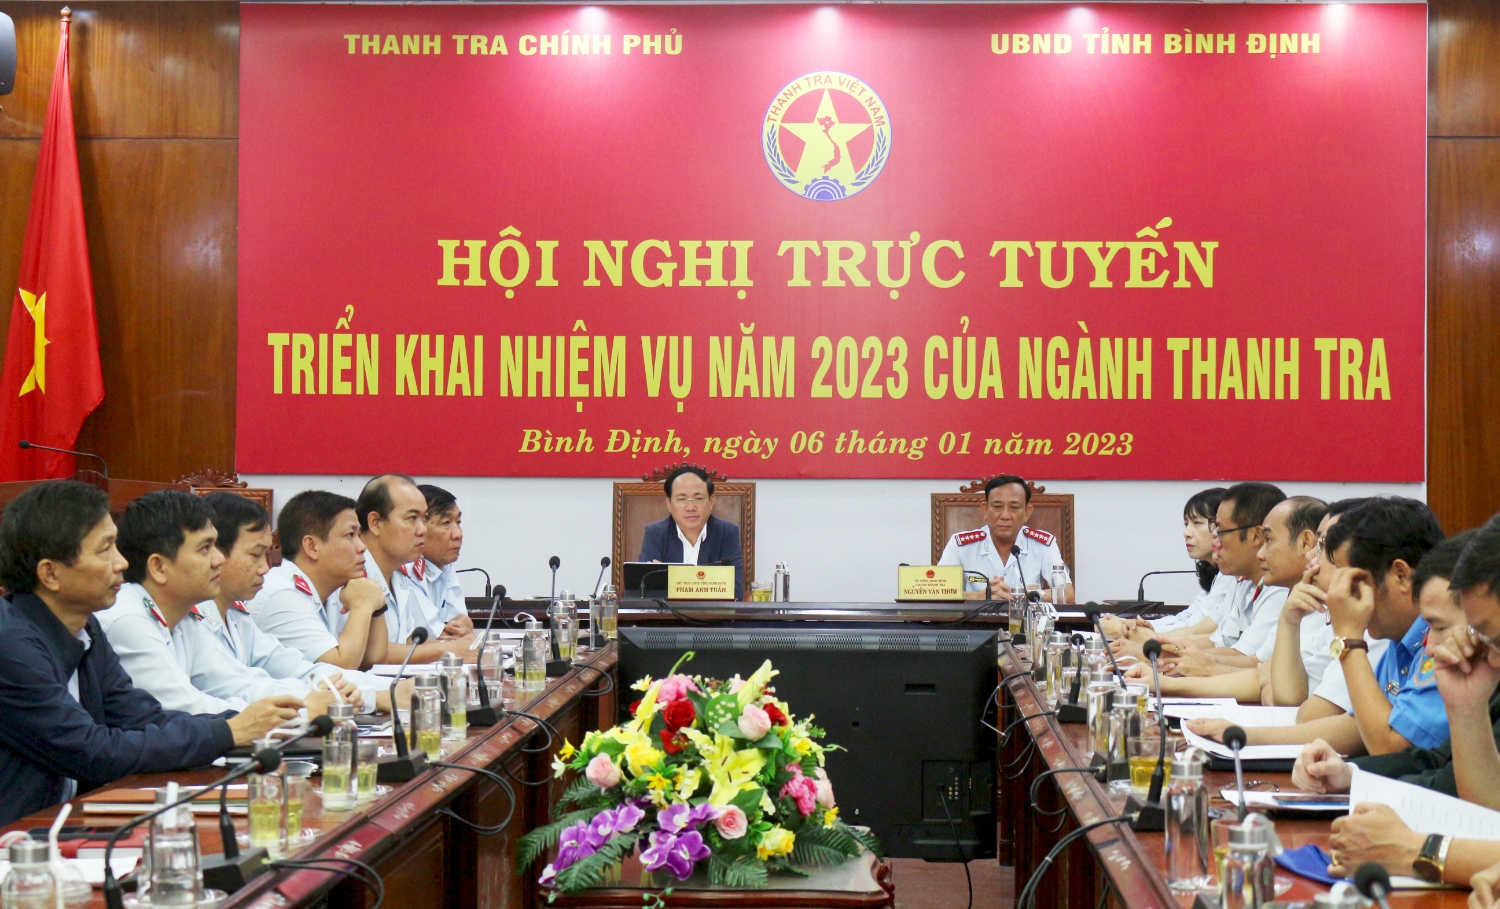 Các đồng chí: Phạm Anh Tuấn - Chủ tịch UBND tỉnh; Nguyễn Văn Thơm - Chánh Thanh tra tỉnh chủ trì điểm cầu tỉnh Bình Định (ảnh).